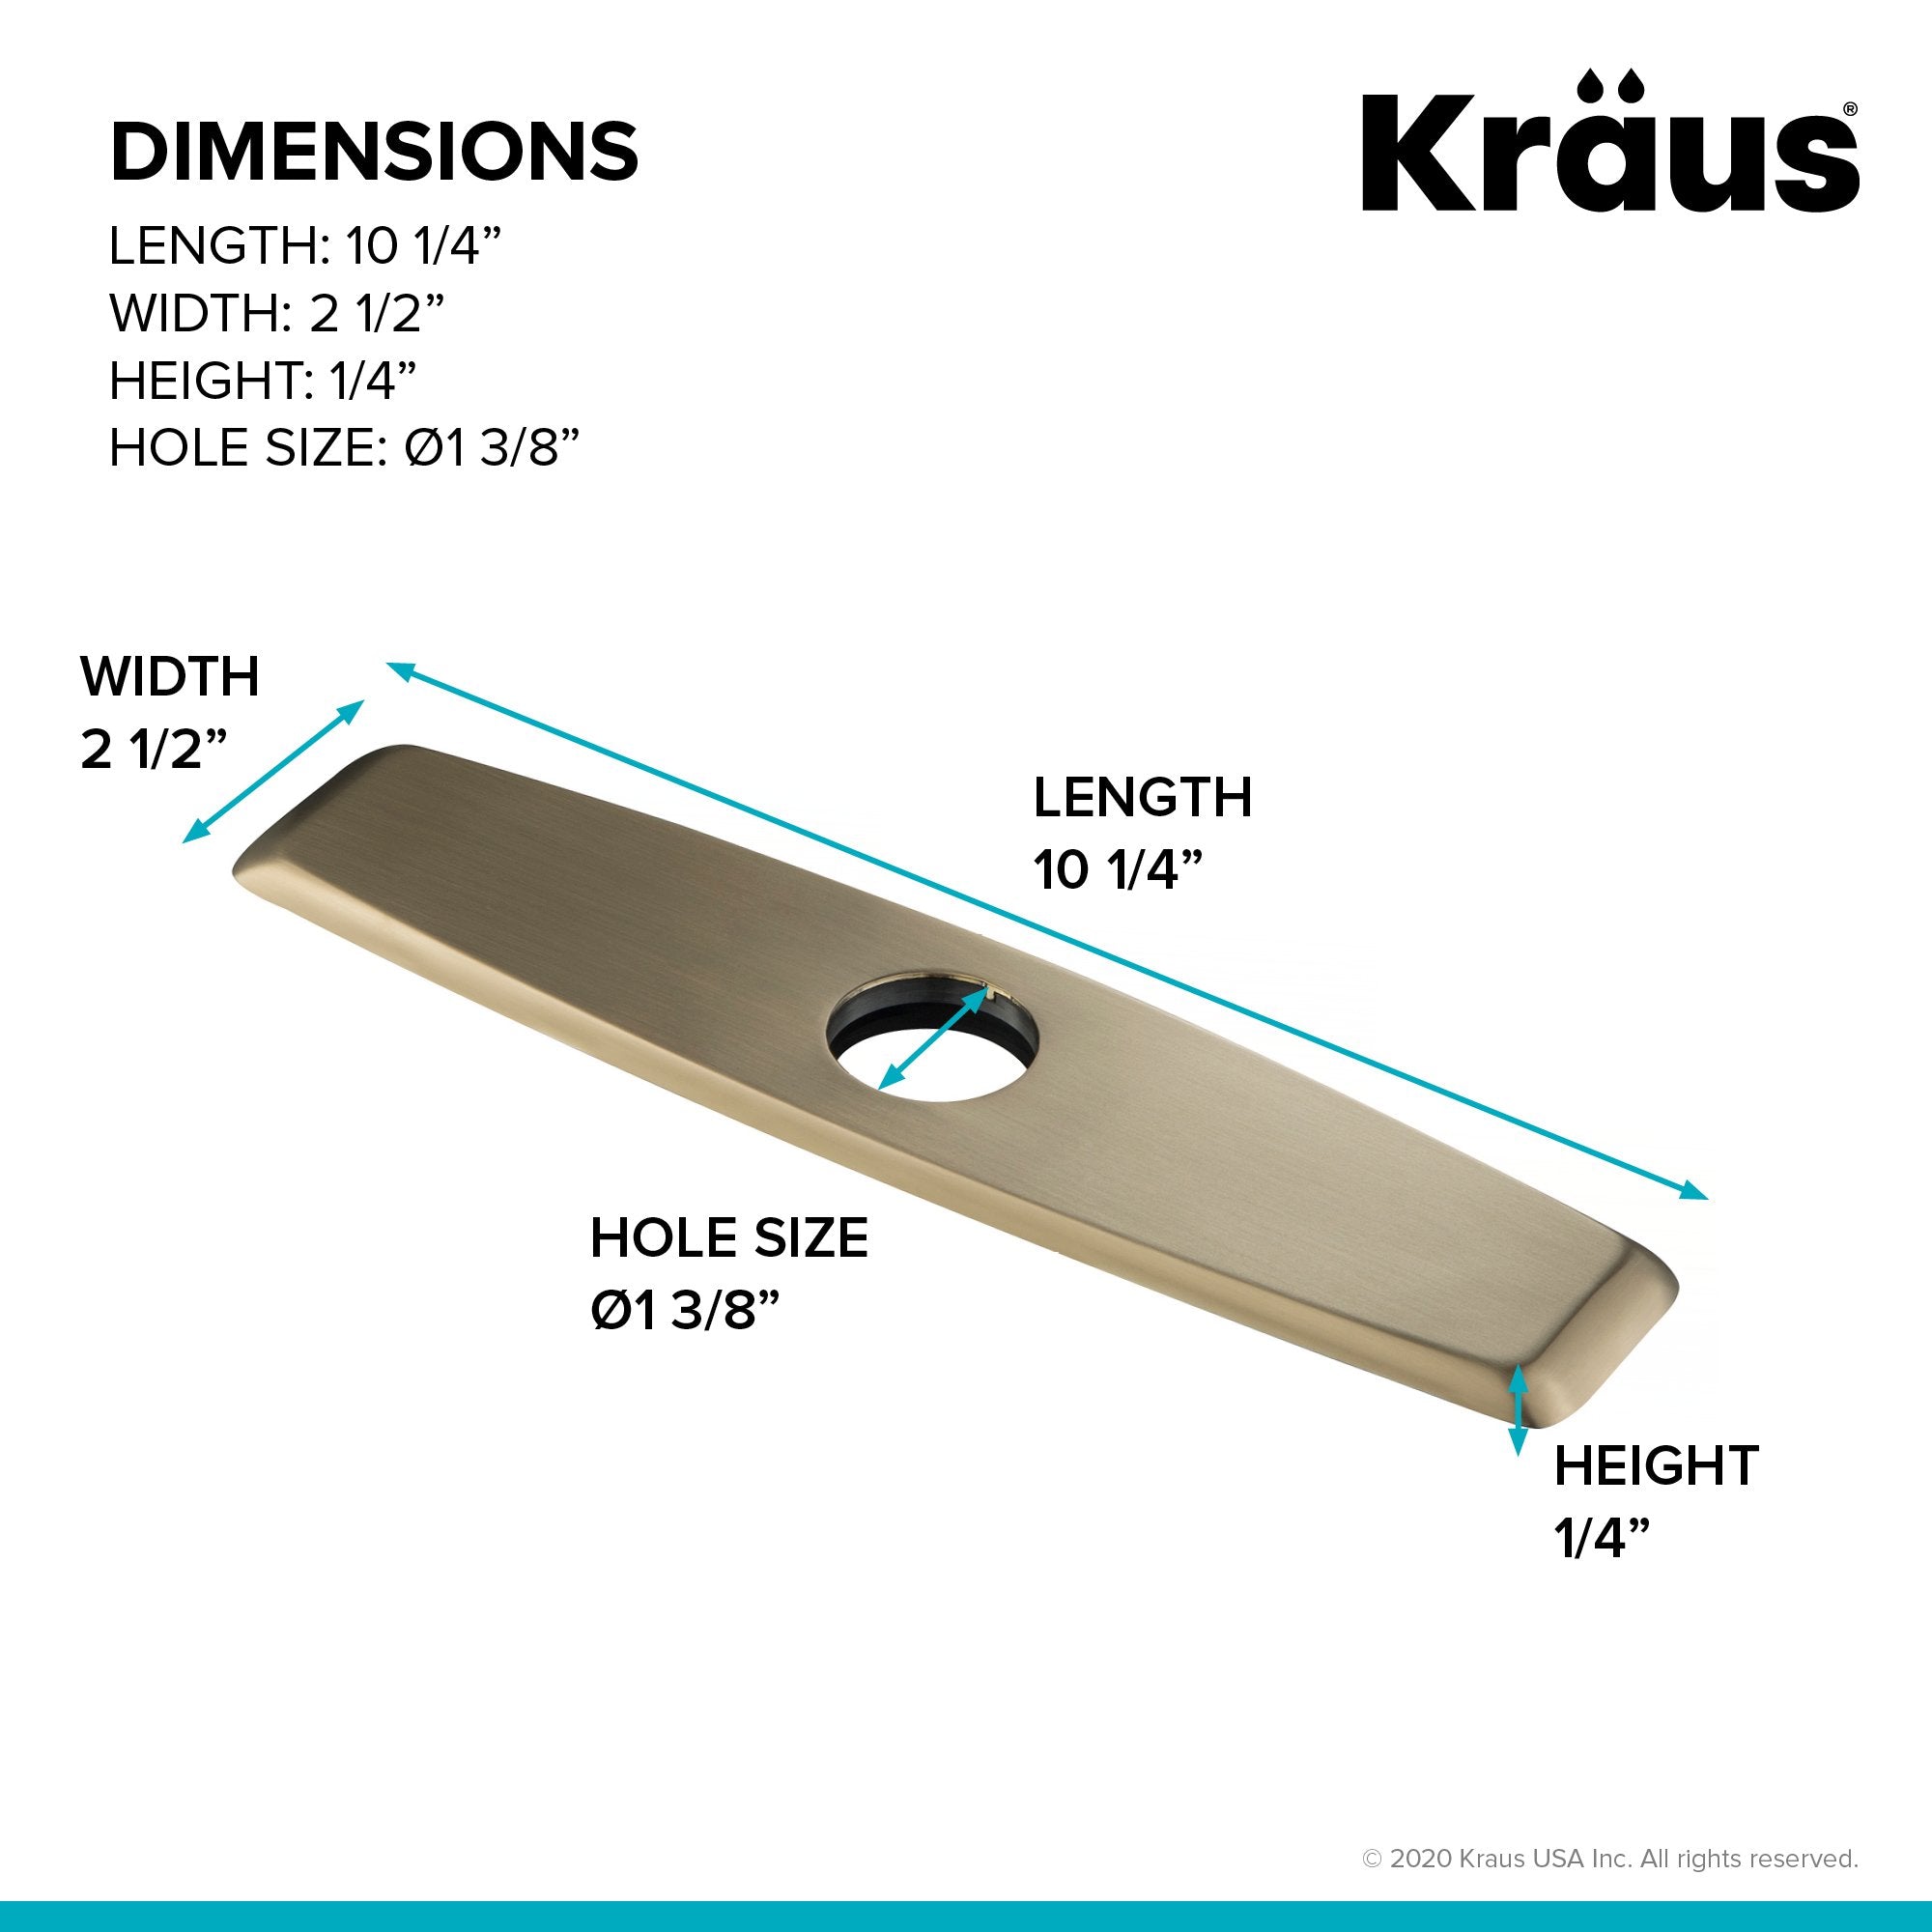 KRAUS DP02 Deck Plate for Kitchen Faucet-Kitchen Accessories-KRAUS